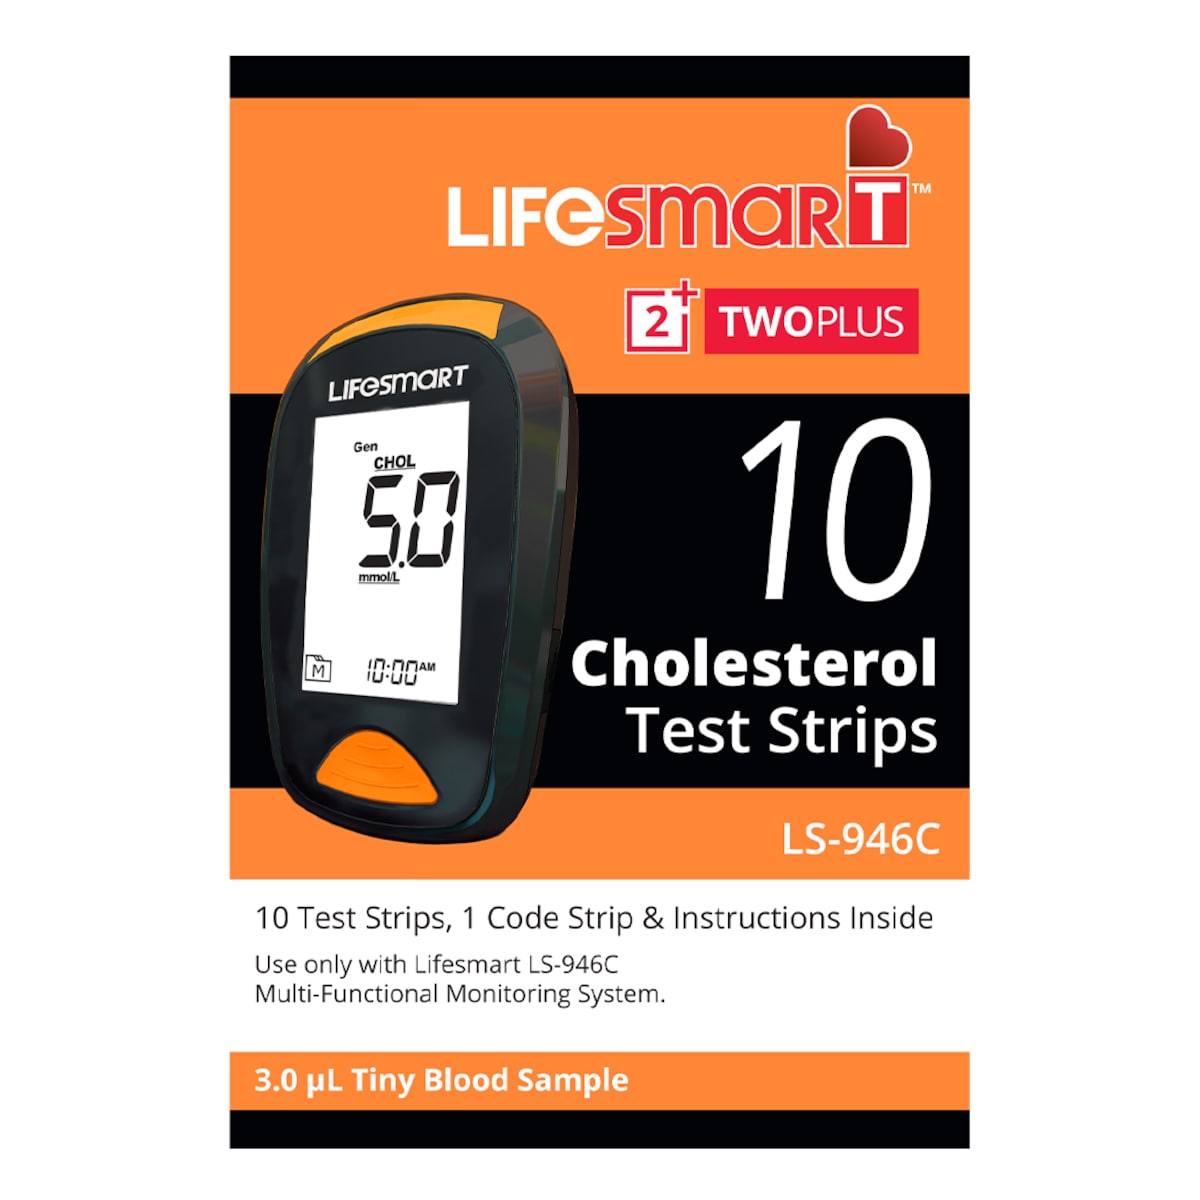 LifeSmart TwoPlus Cholesterol Test Strips 10 Strips